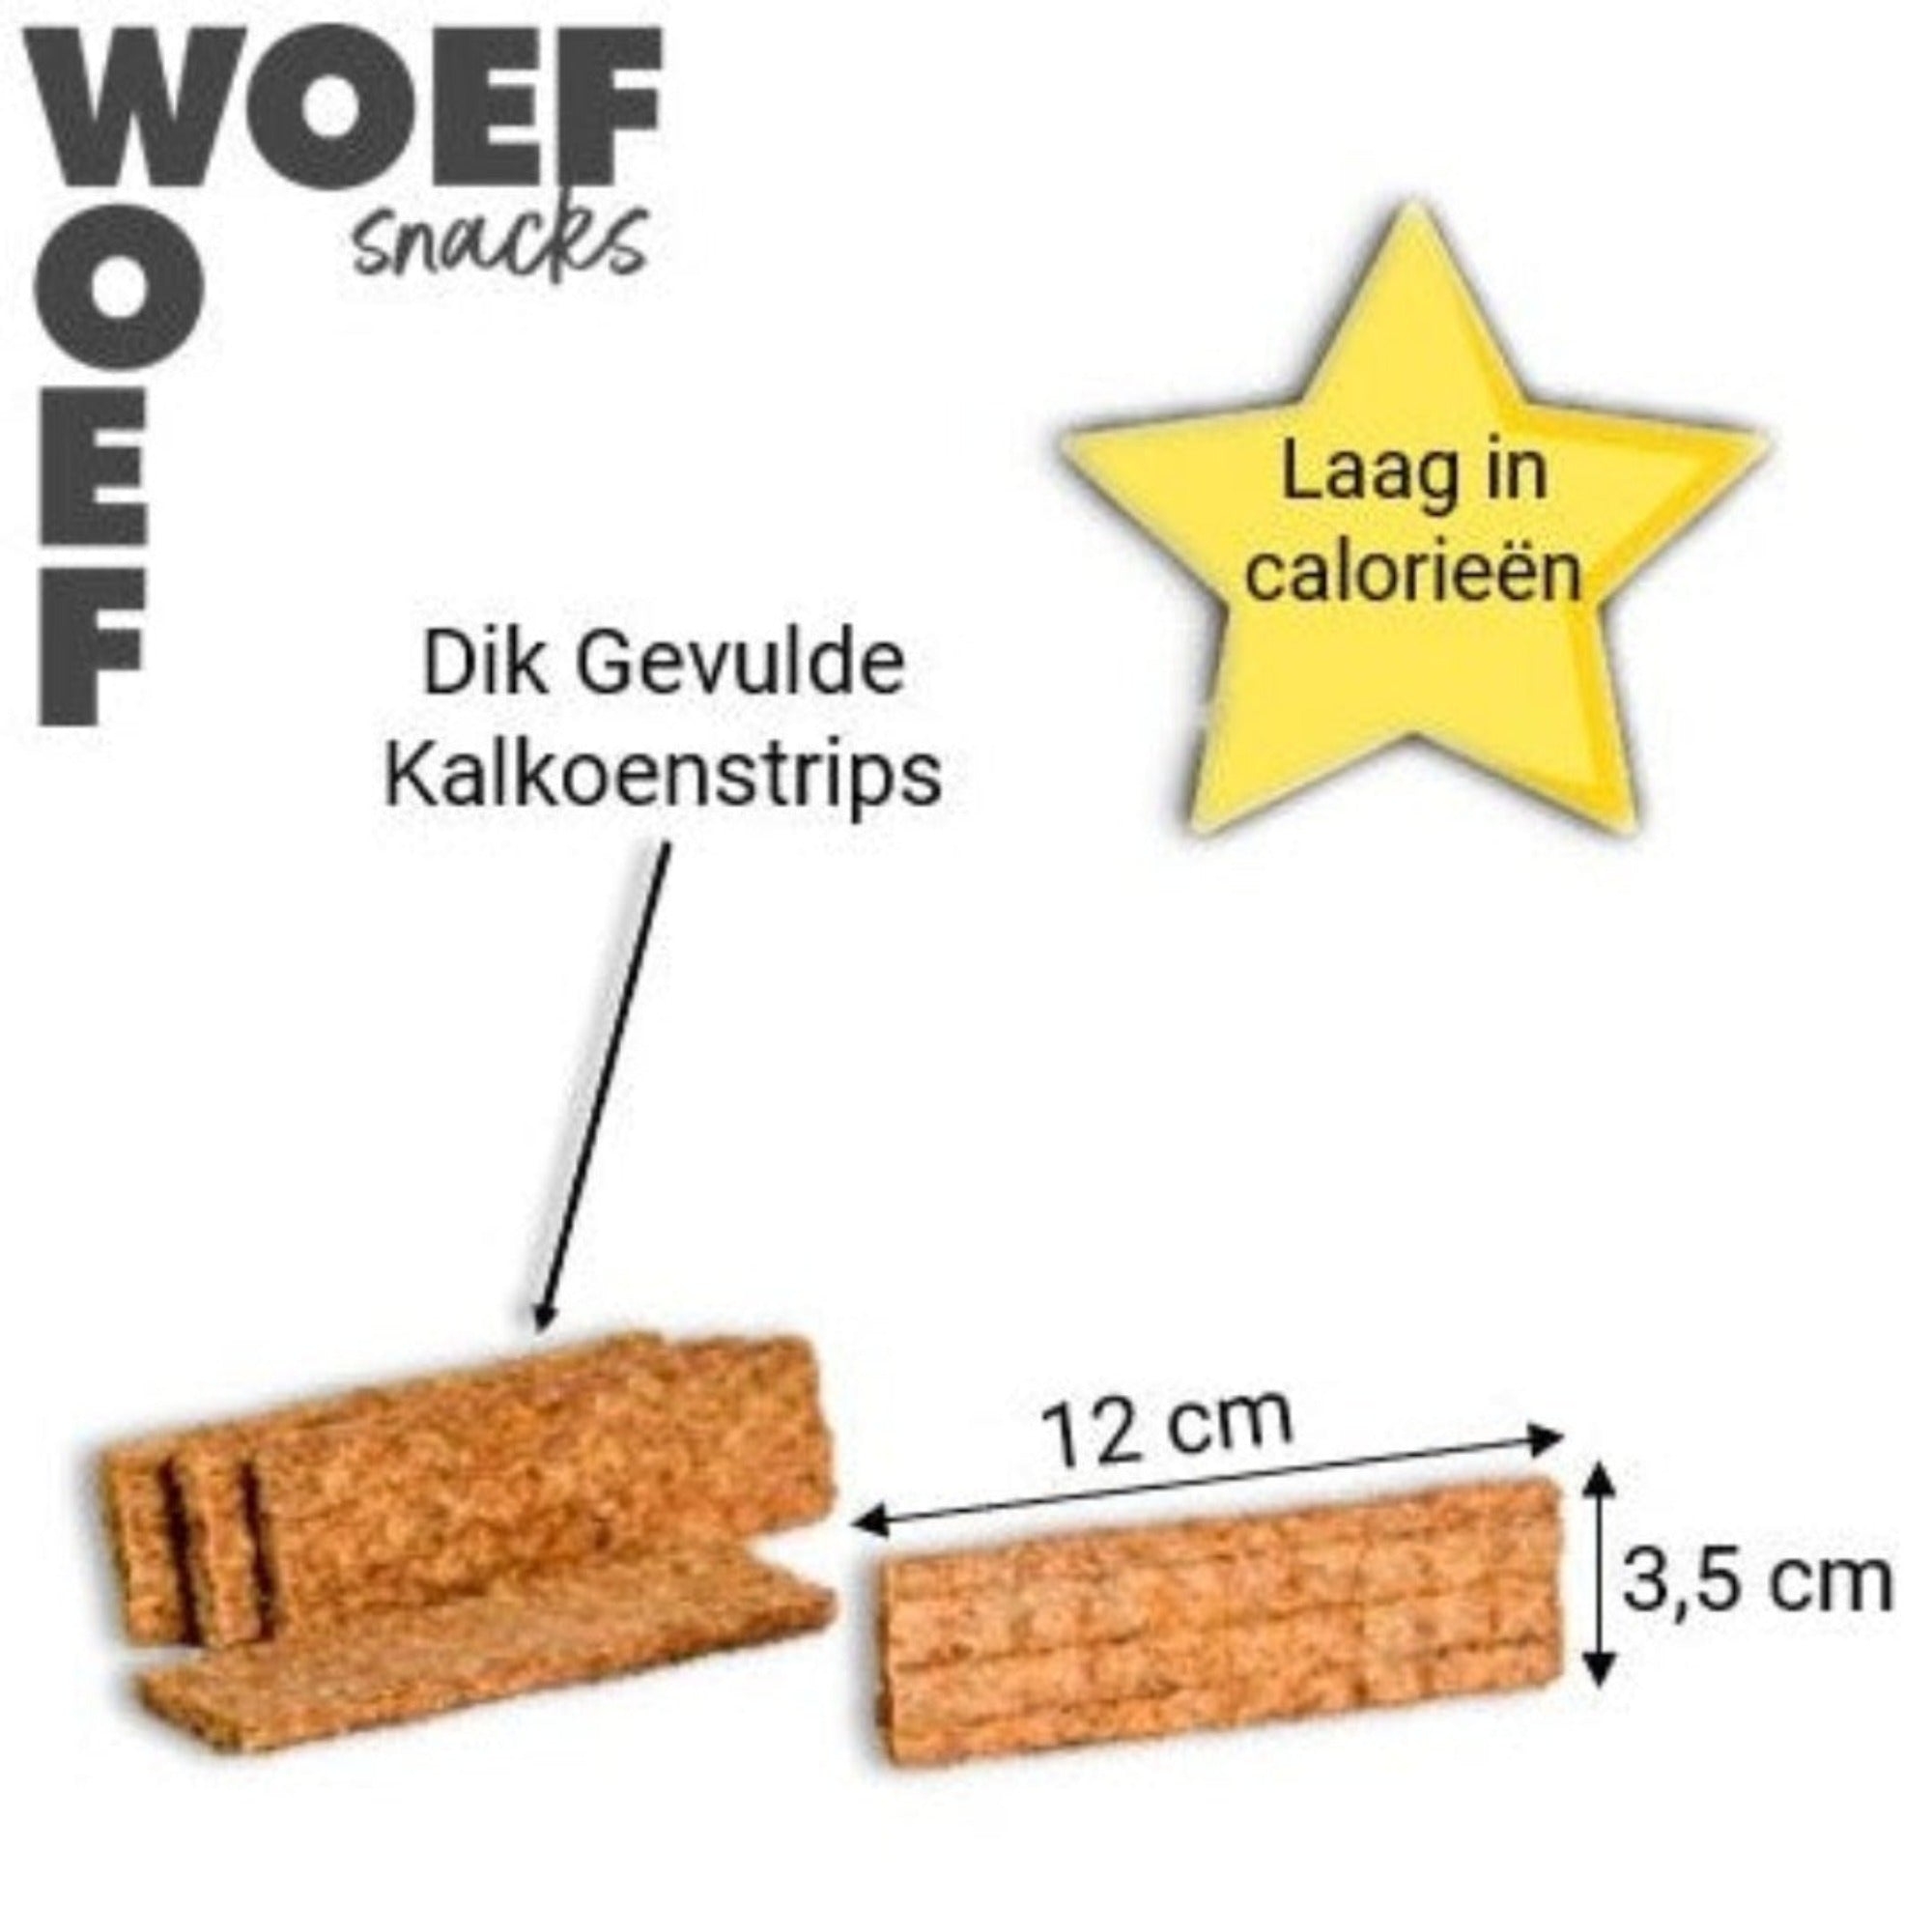 Informatie foto over kalkoenstrips. Ze zijn 12 centimeter lang en 3,5 centimeter breed. Ze zijn goed gevuld en laag in calorieen.